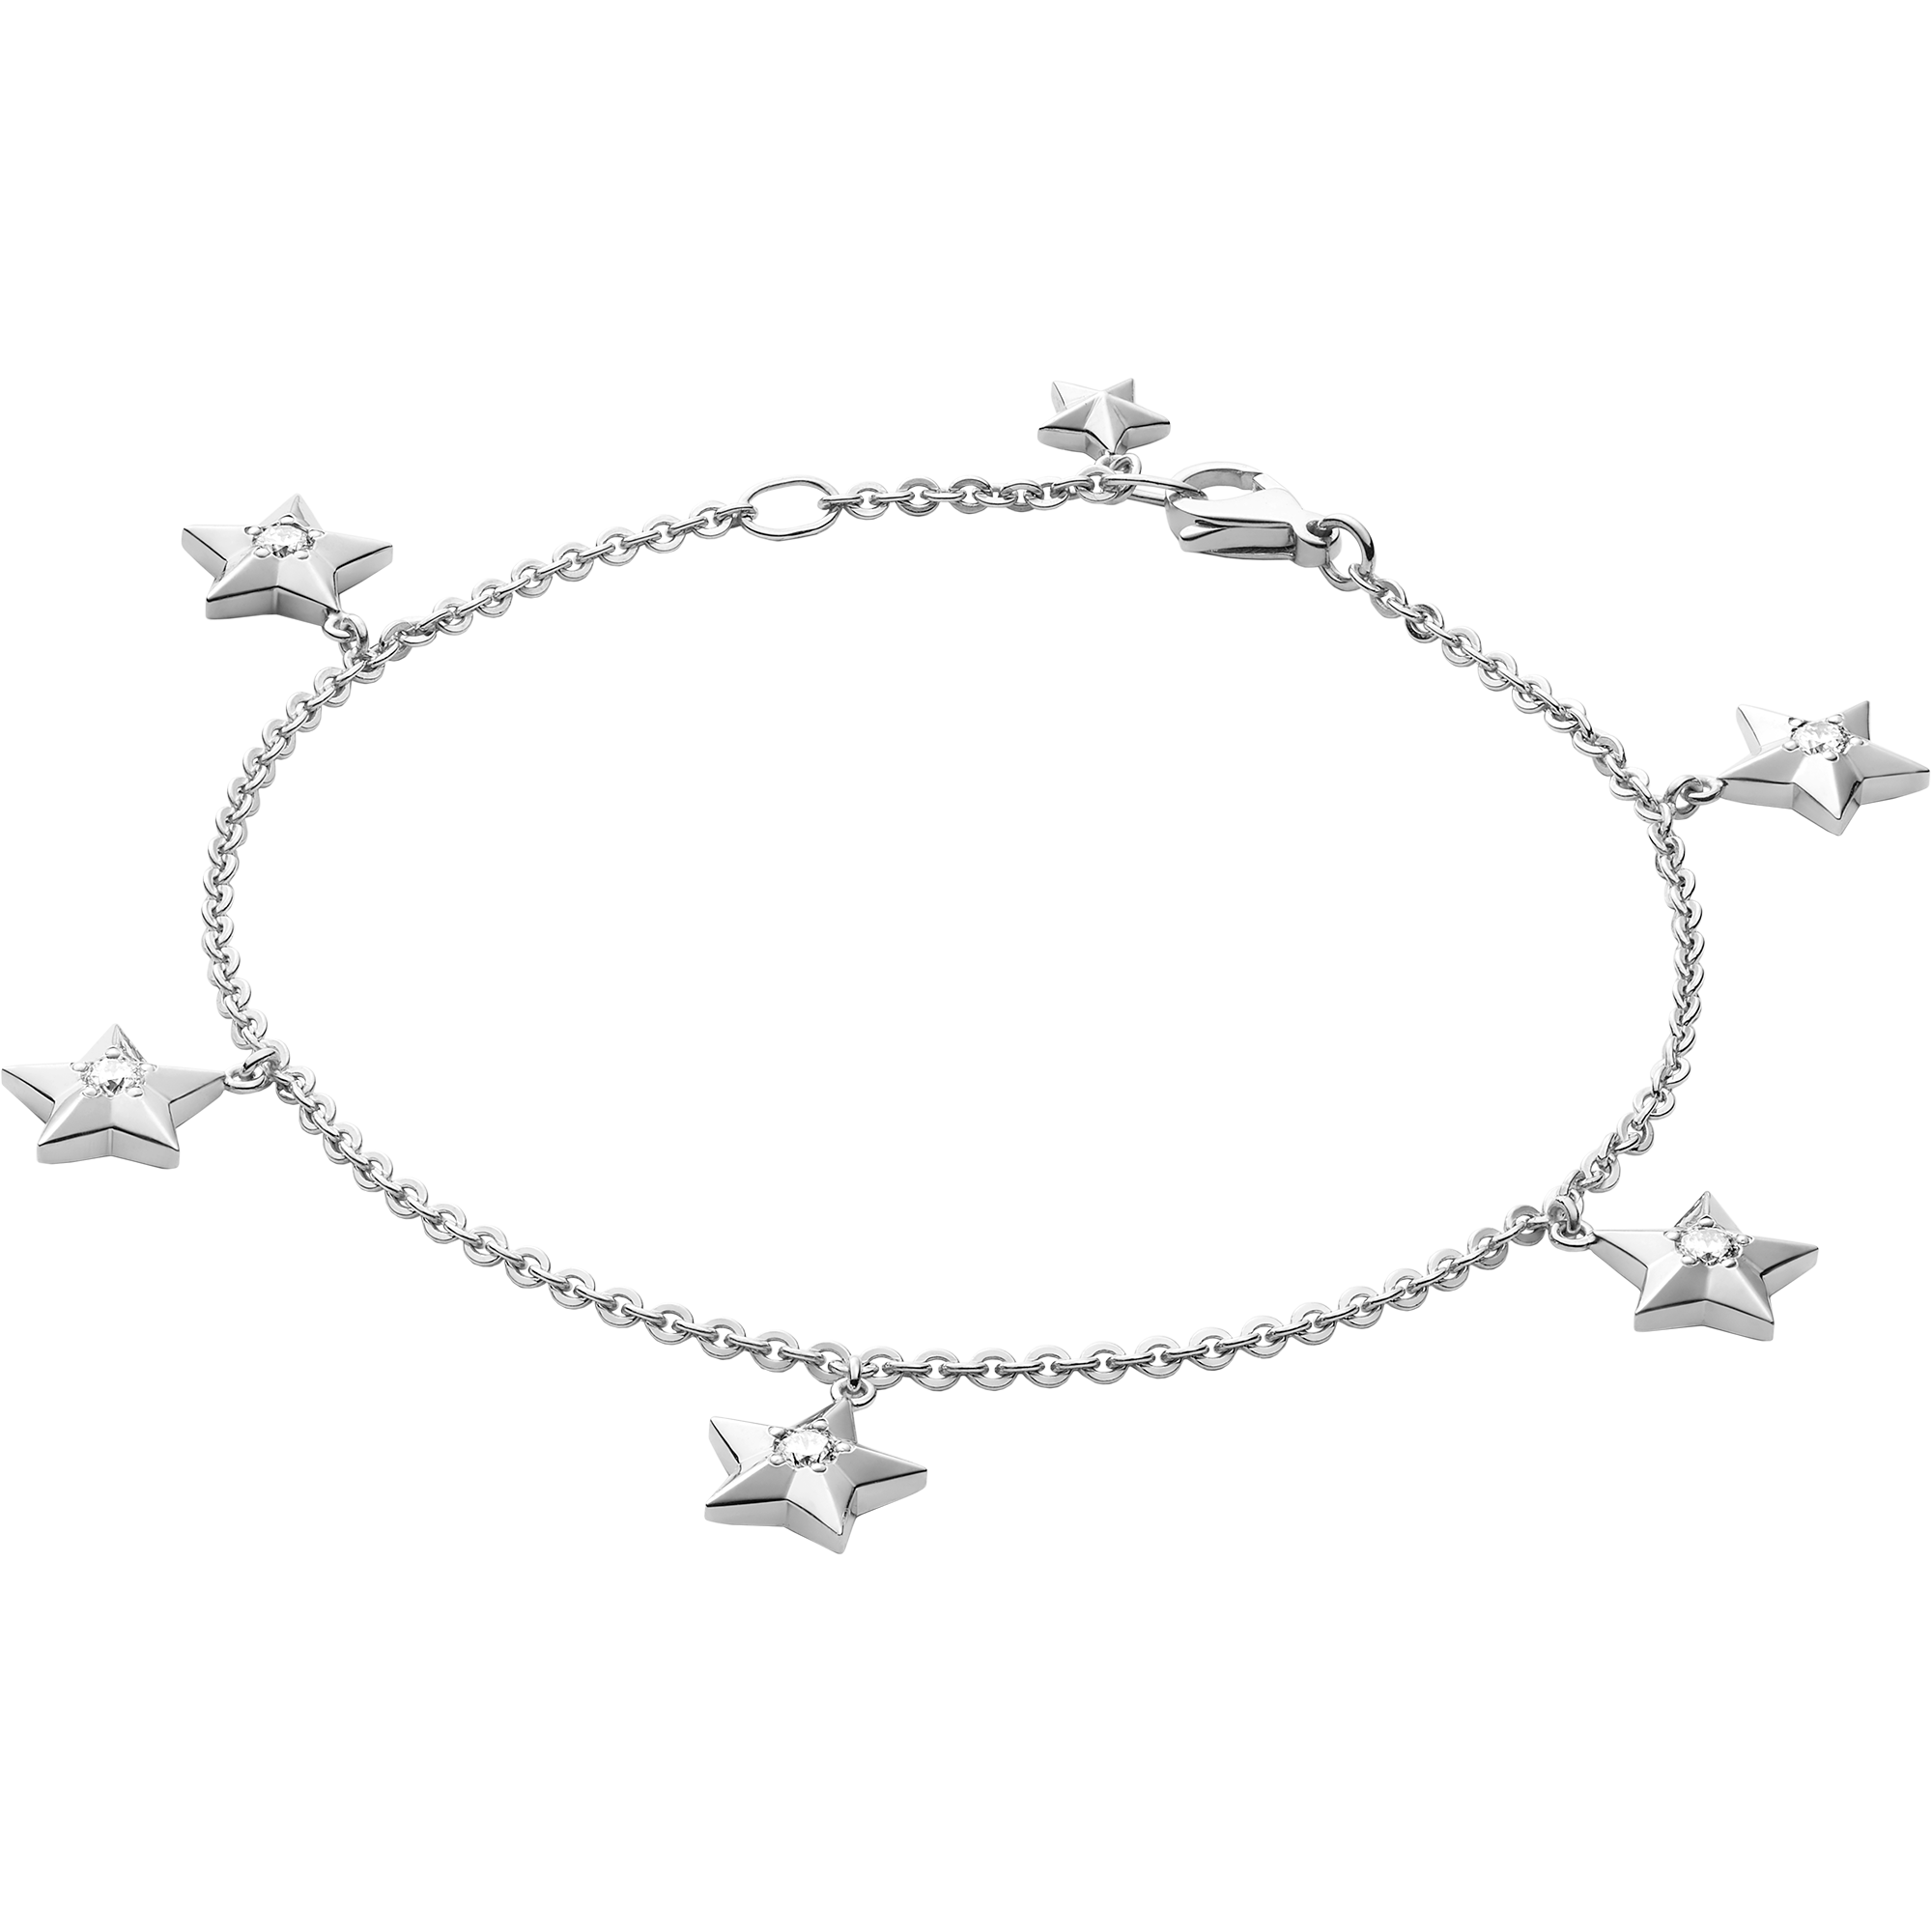 Constellation Armband, 18 K Weißgold, Diamanten - BA01BC0100305